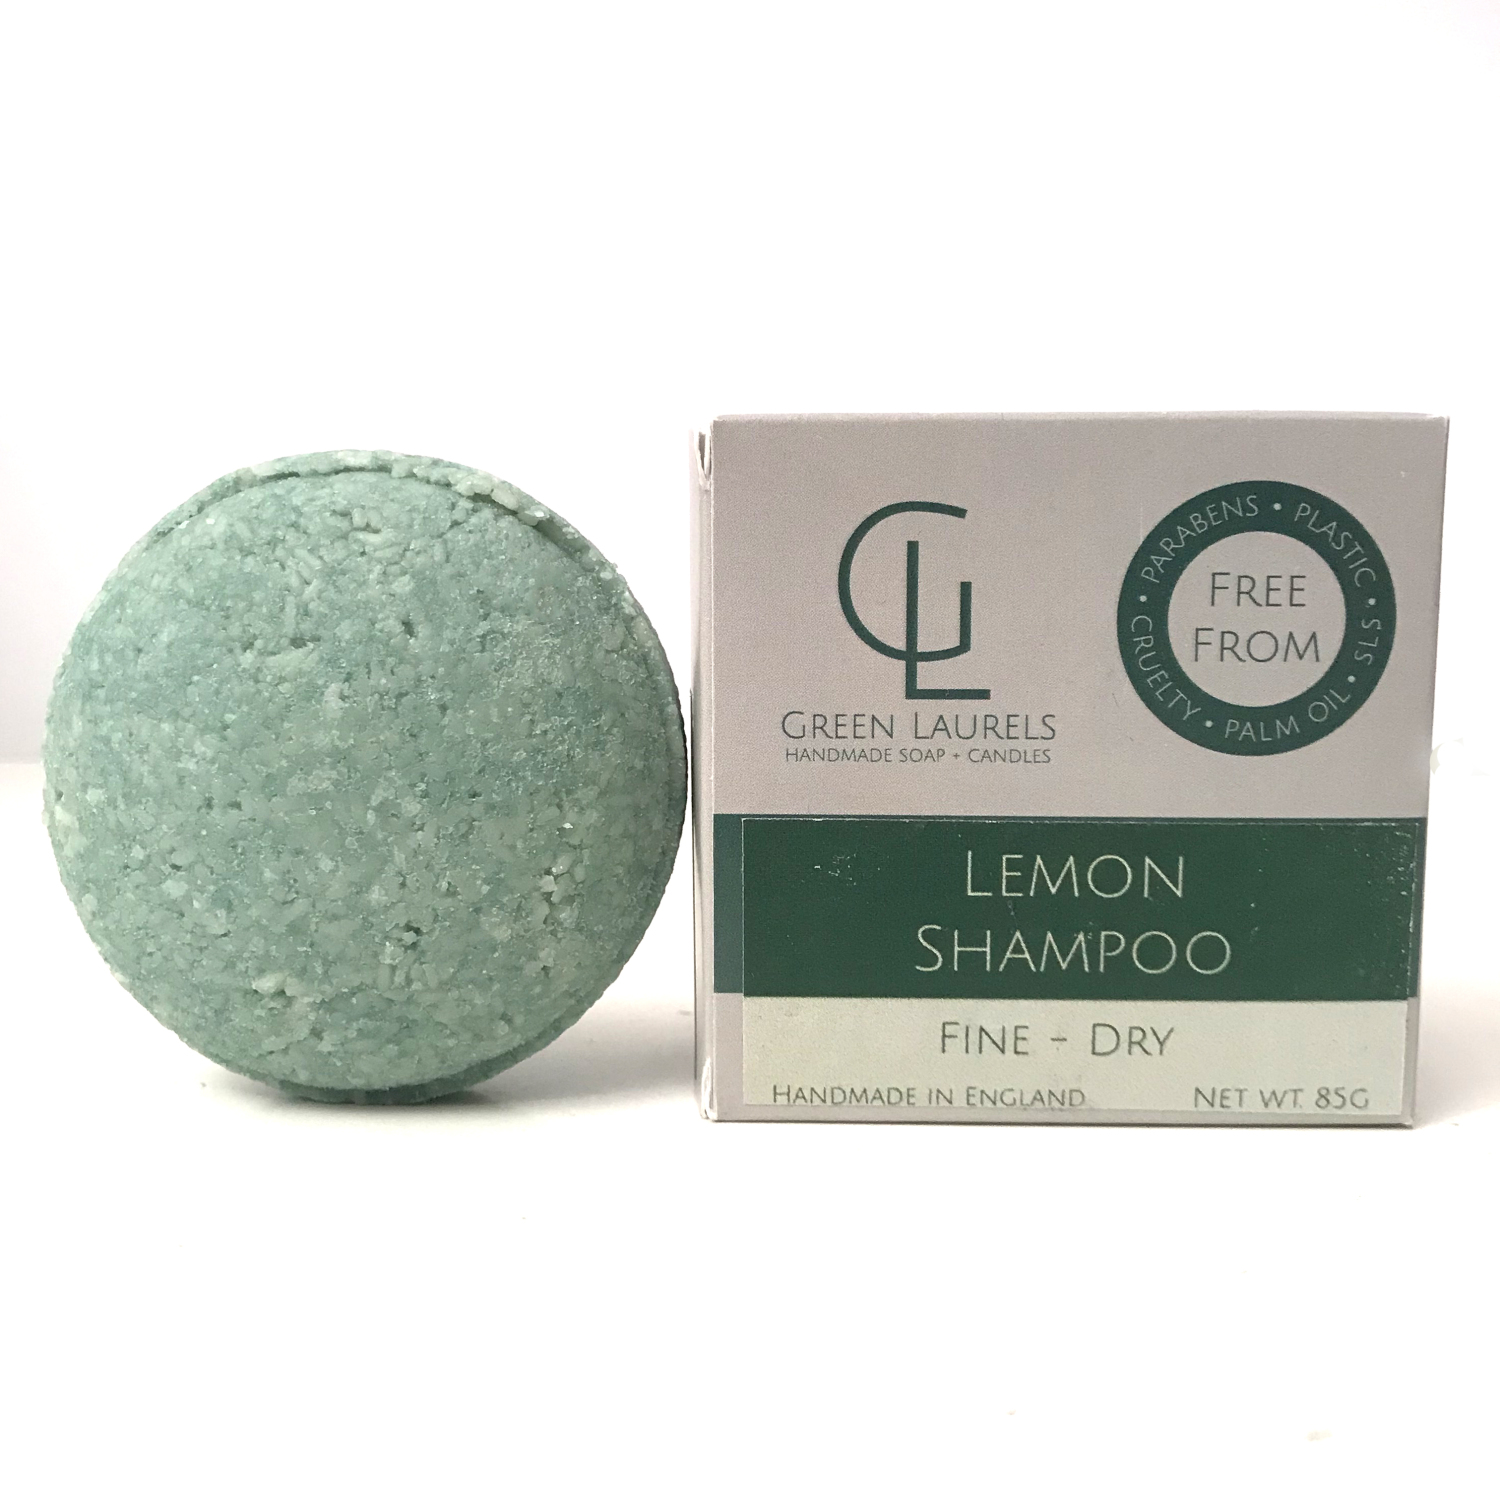 Shampoo Bar for Fine - Dry Hair - Lemon